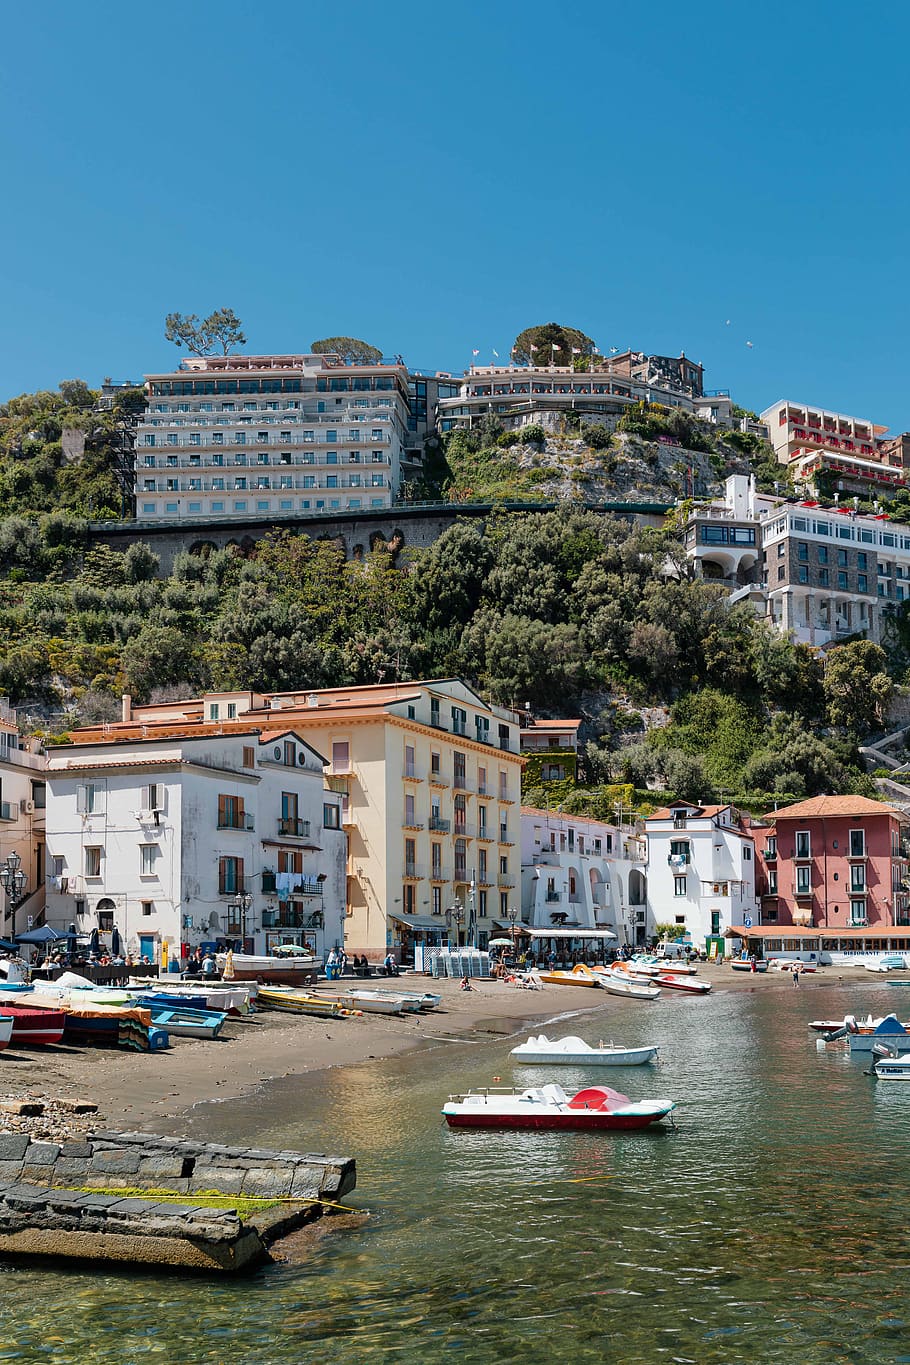 Italia, Eropa, biaya, amalfi, perjalanan, campania, Laut Tyrrhenian, Sorrento, kapal laut, eksterior bangunan